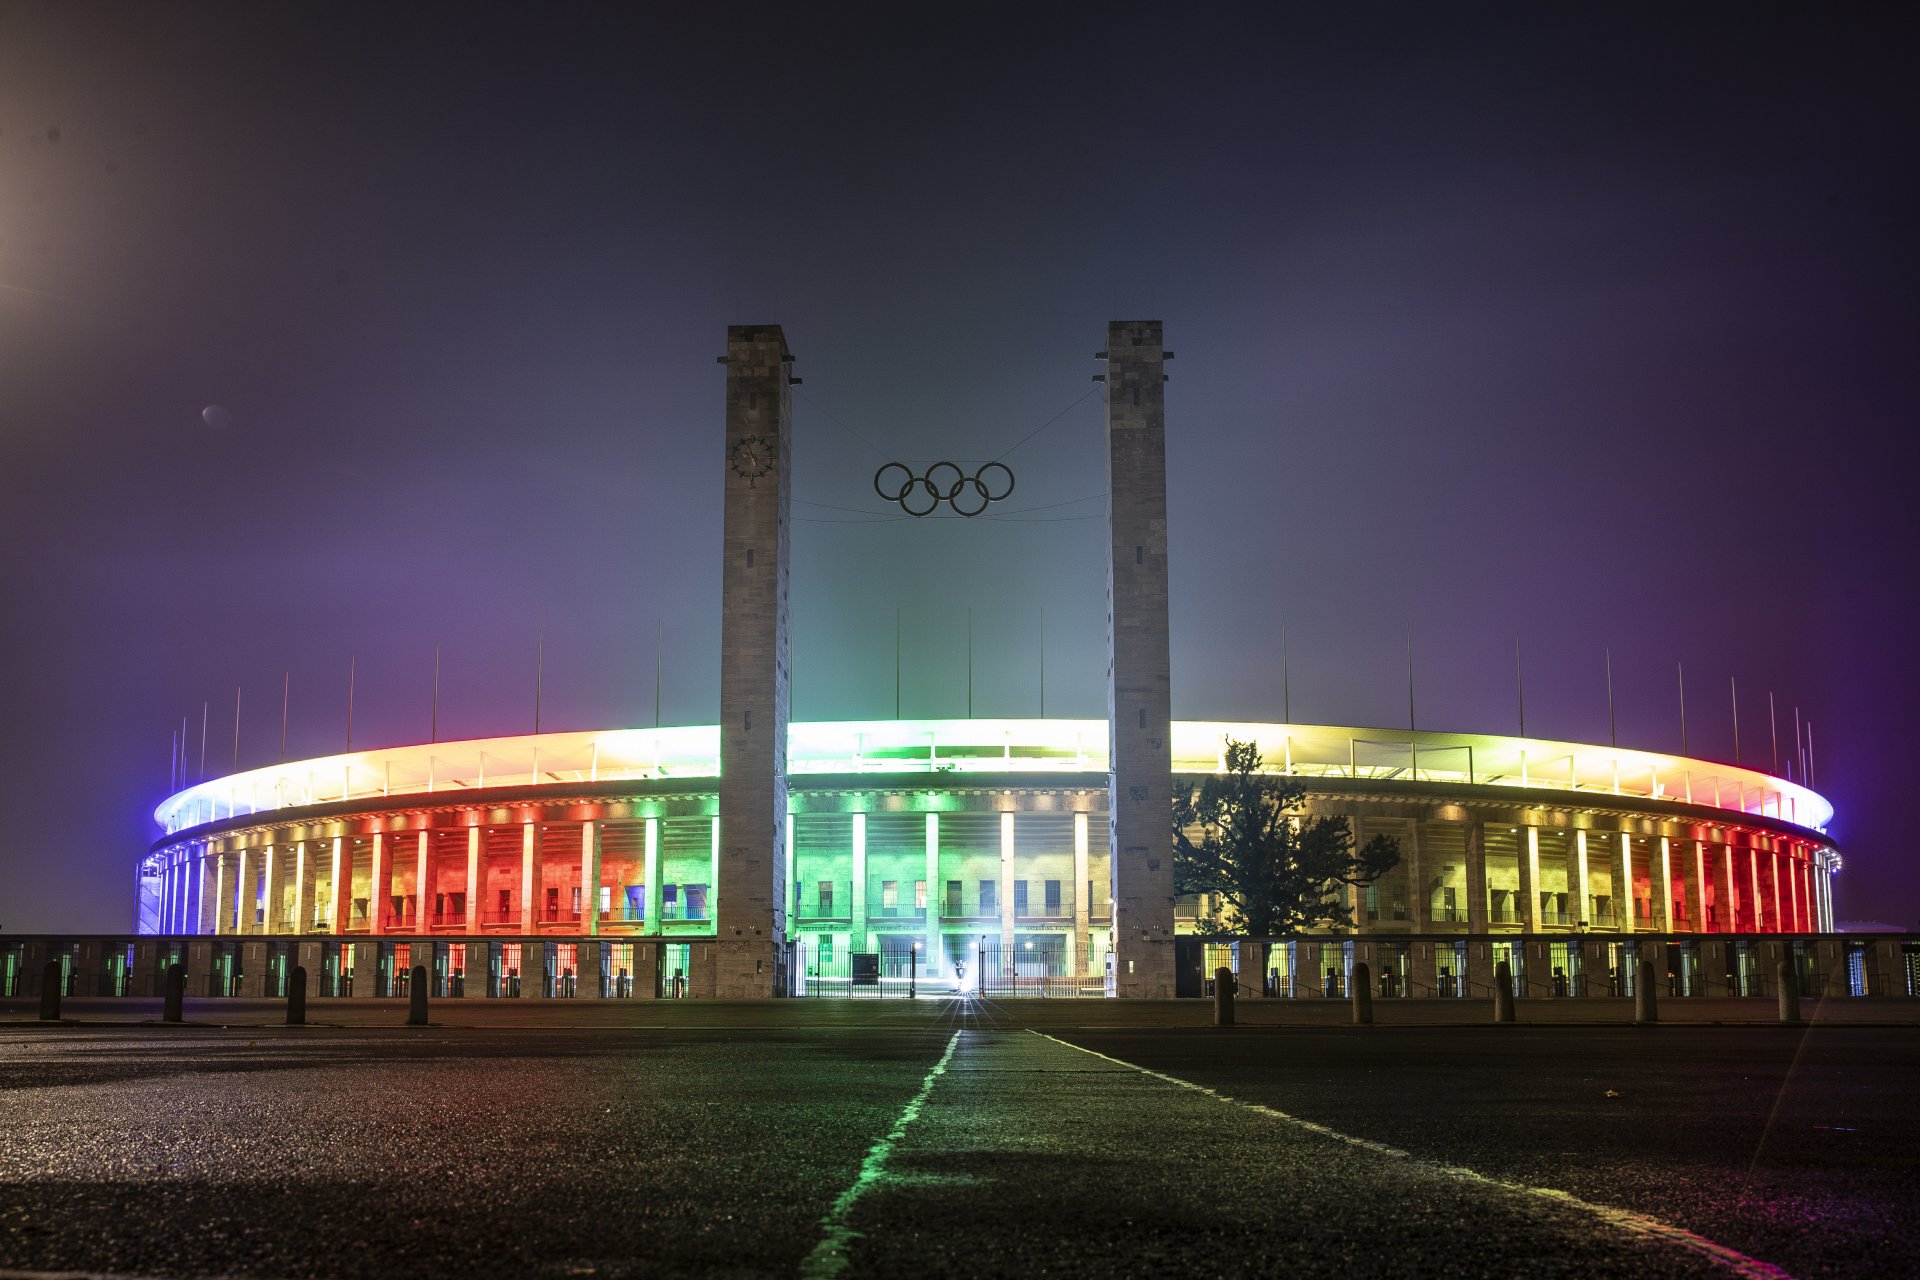 "Олимпиащадион" Берлин